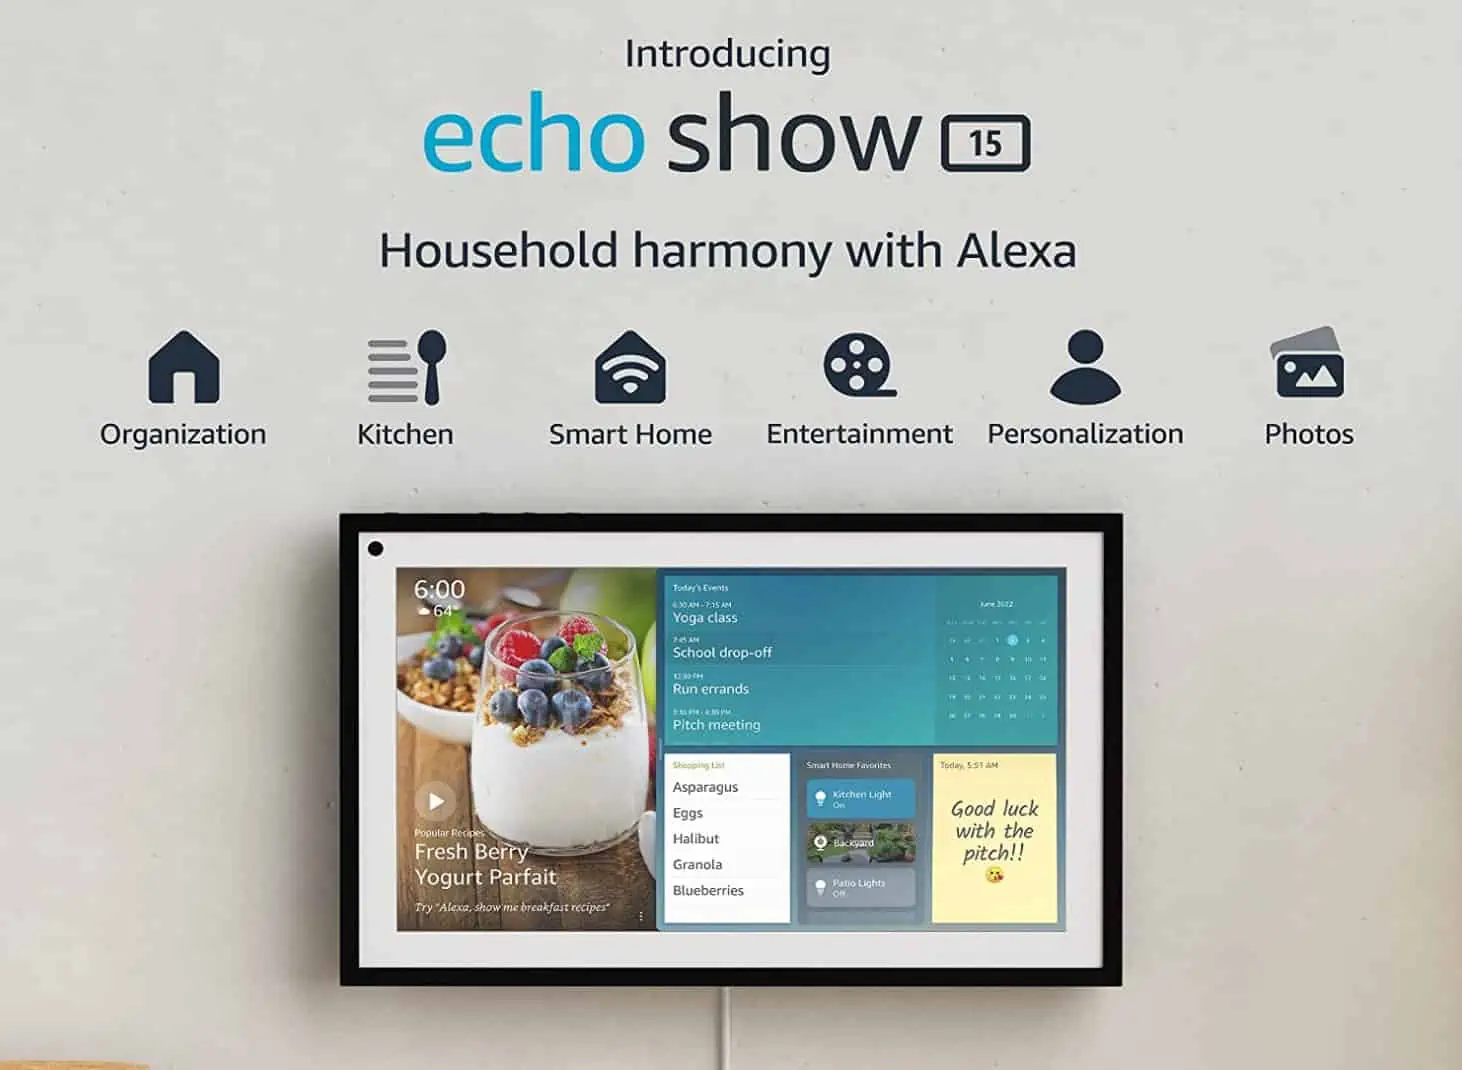 Amazon annuncia Echo Show 15, uno smart display da 15 pollici basato su